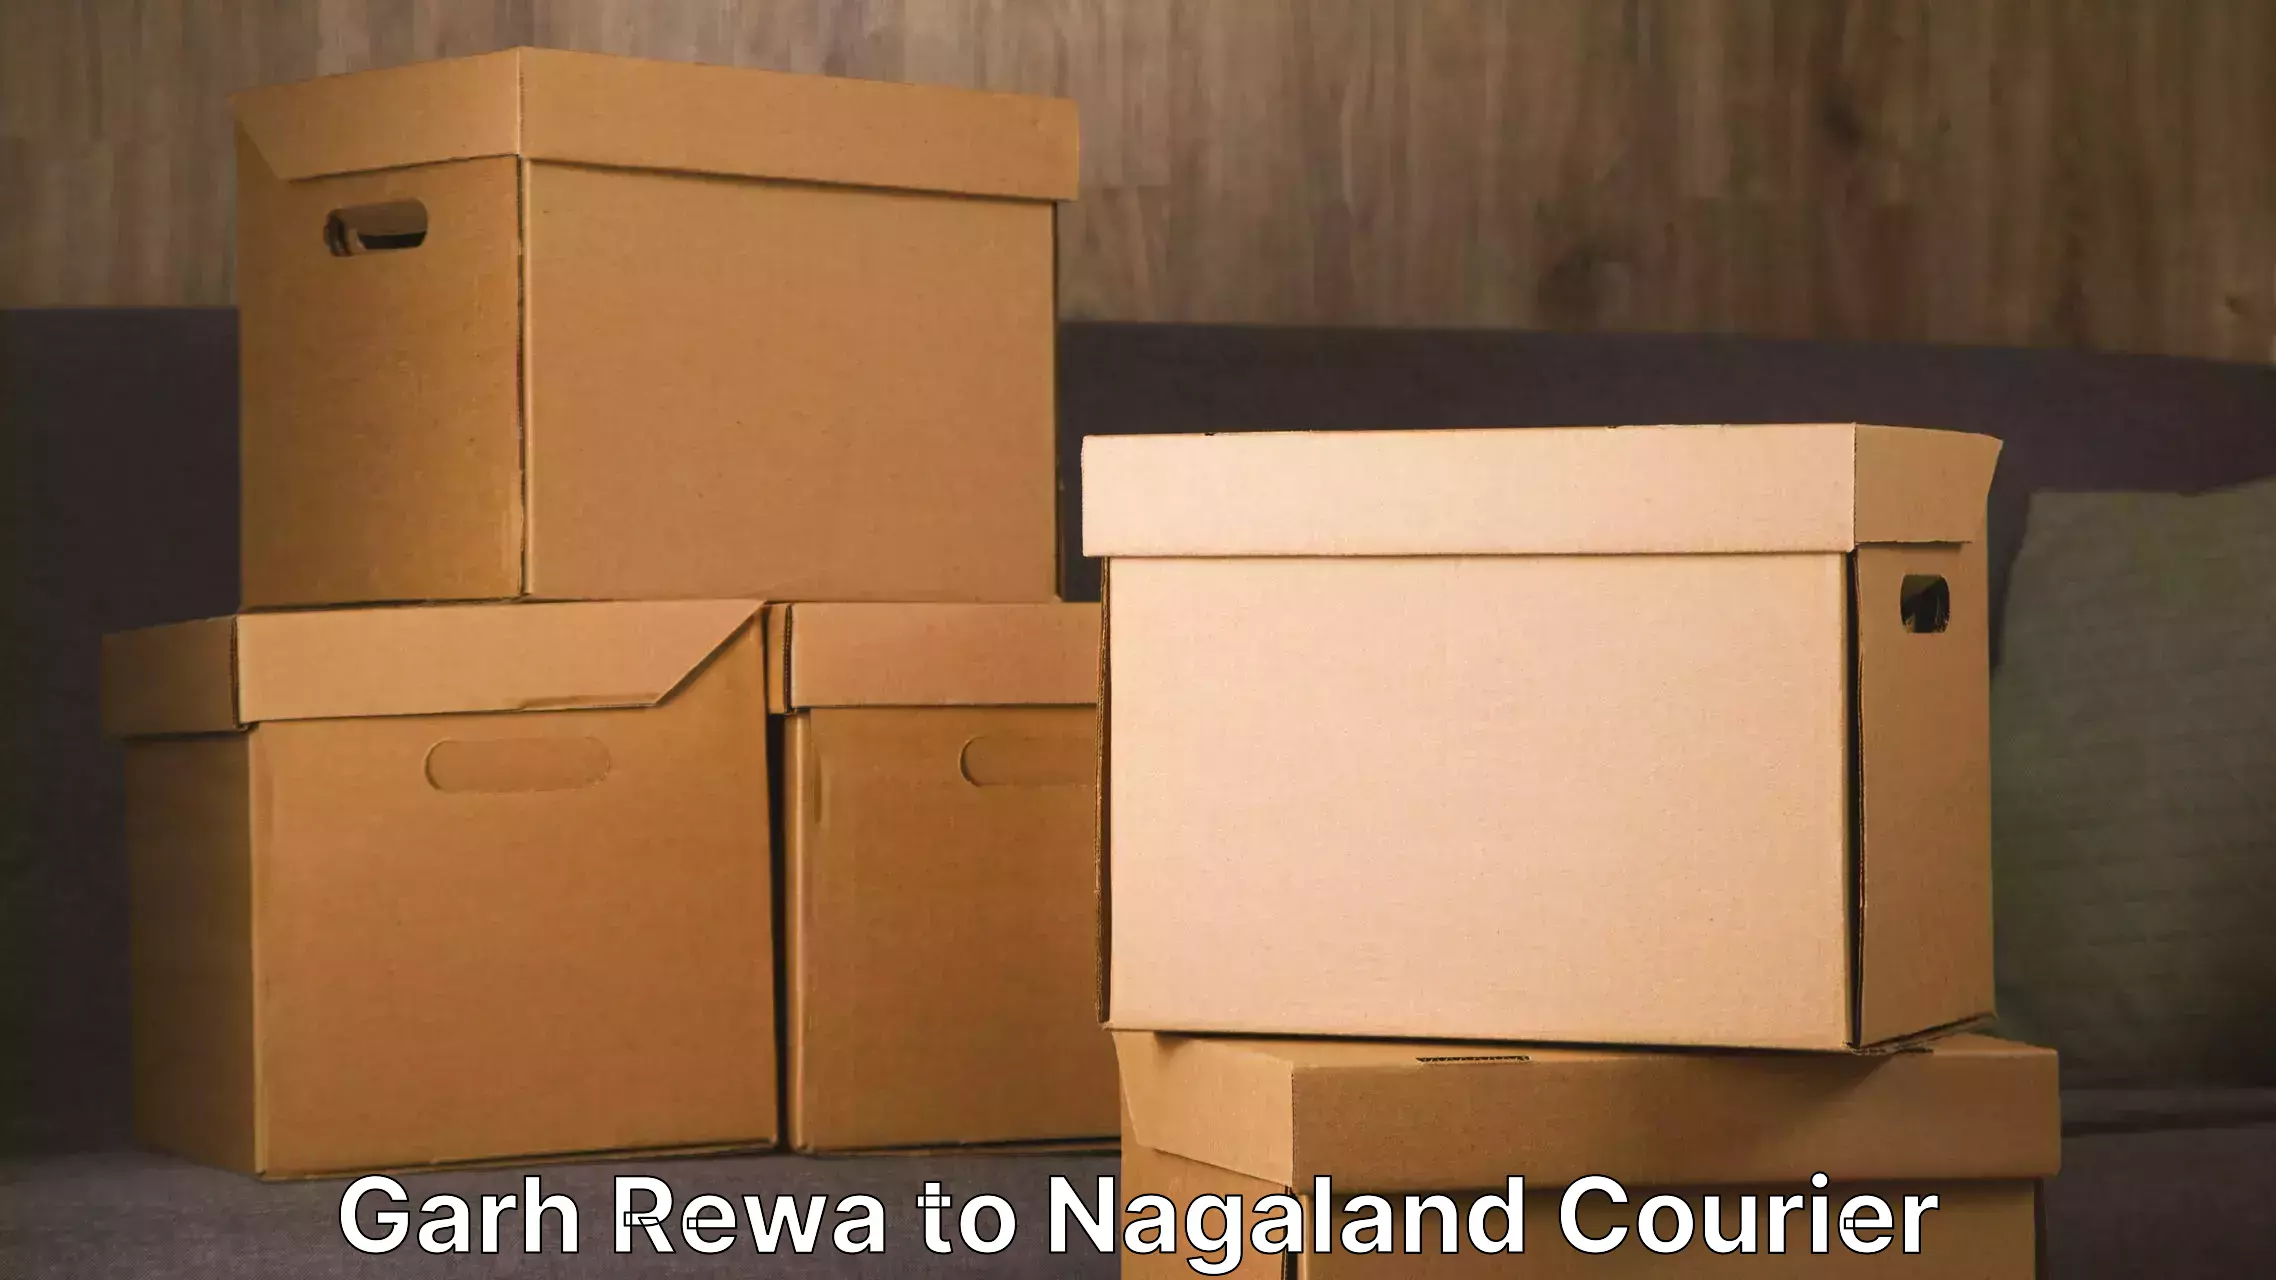 Efficient moving company Garh Rewa to Nagaland